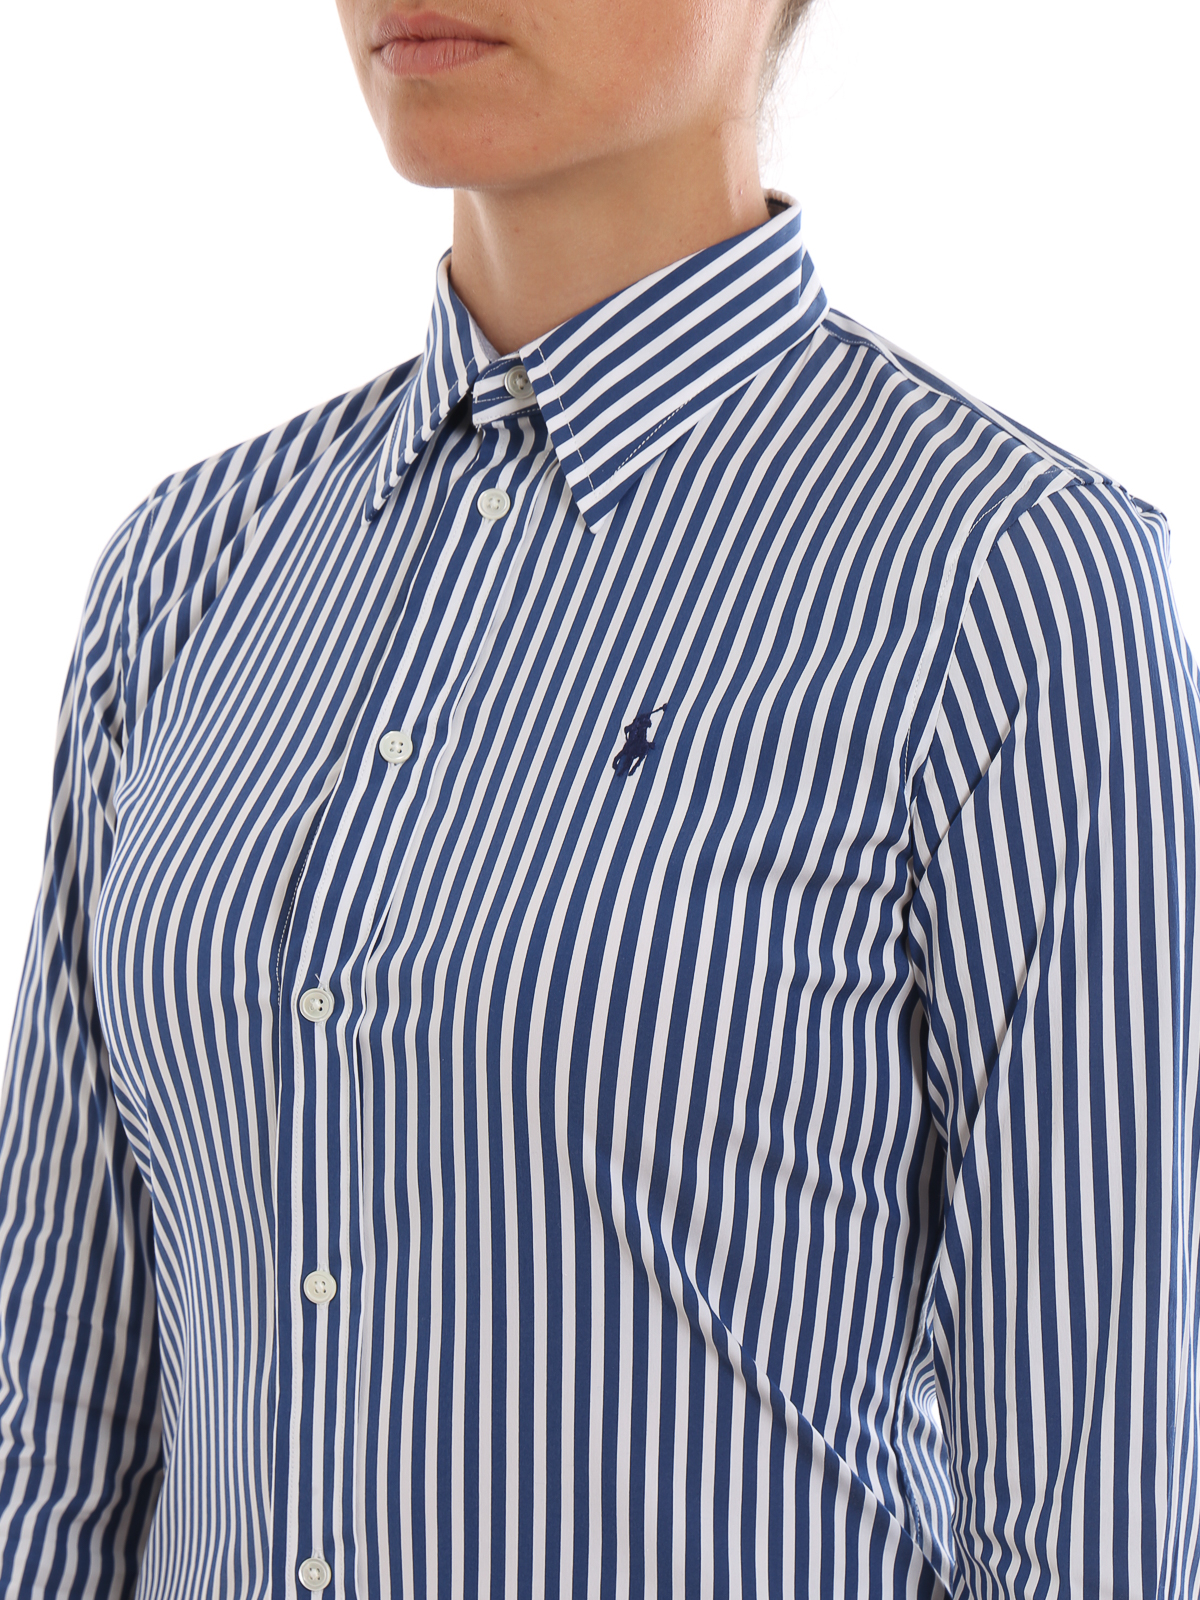 wat betreft Met pensioen gaan Automatisch Shirts Polo Ralph Lauren - Blue and white striped shirt - 211753076004